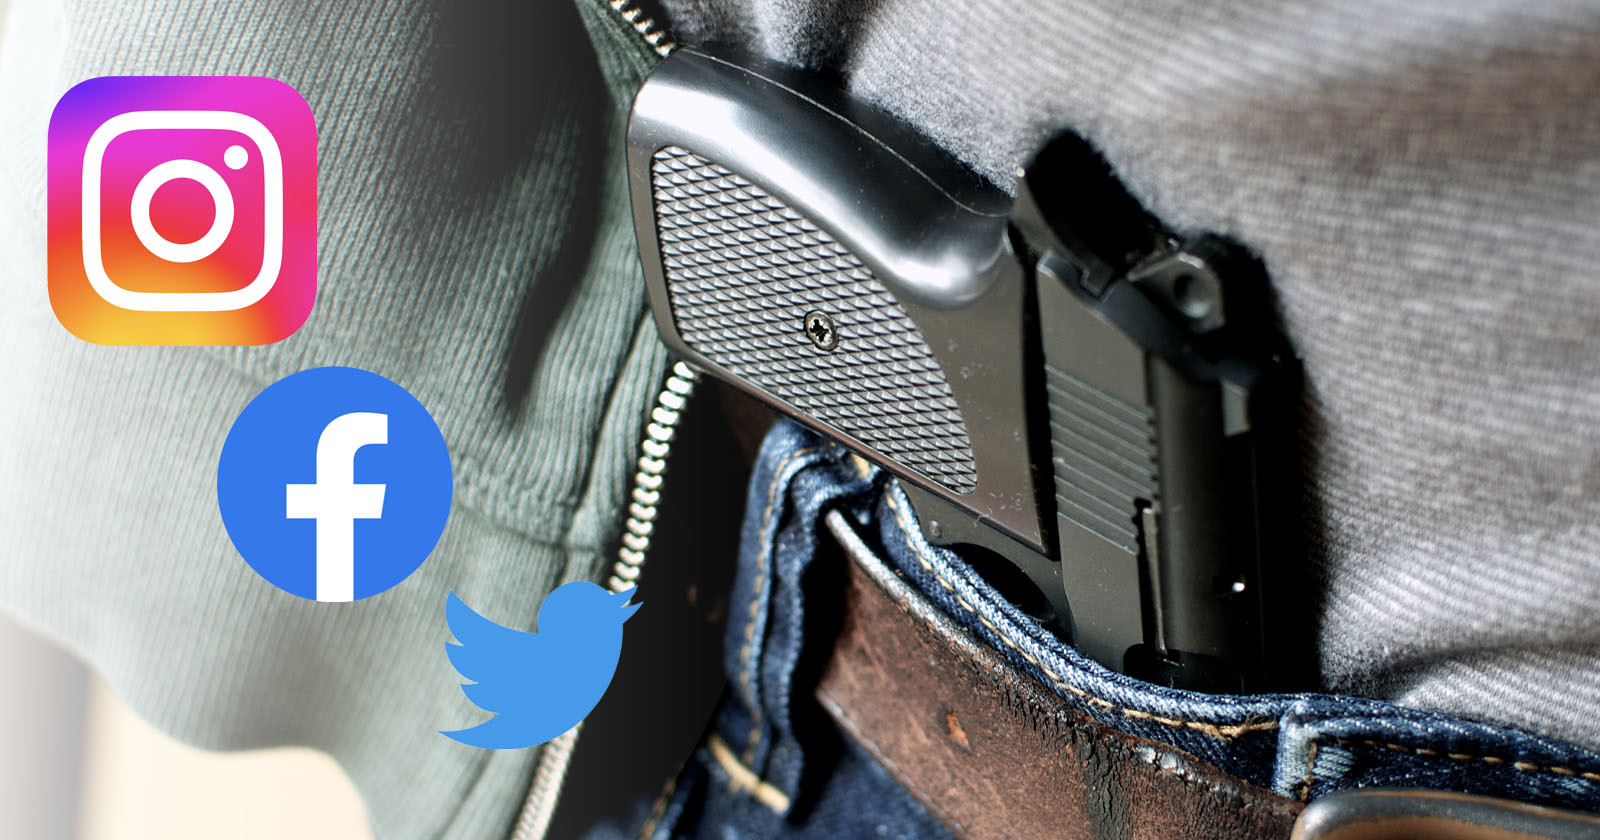  gun applicants must provide list social media accounts 